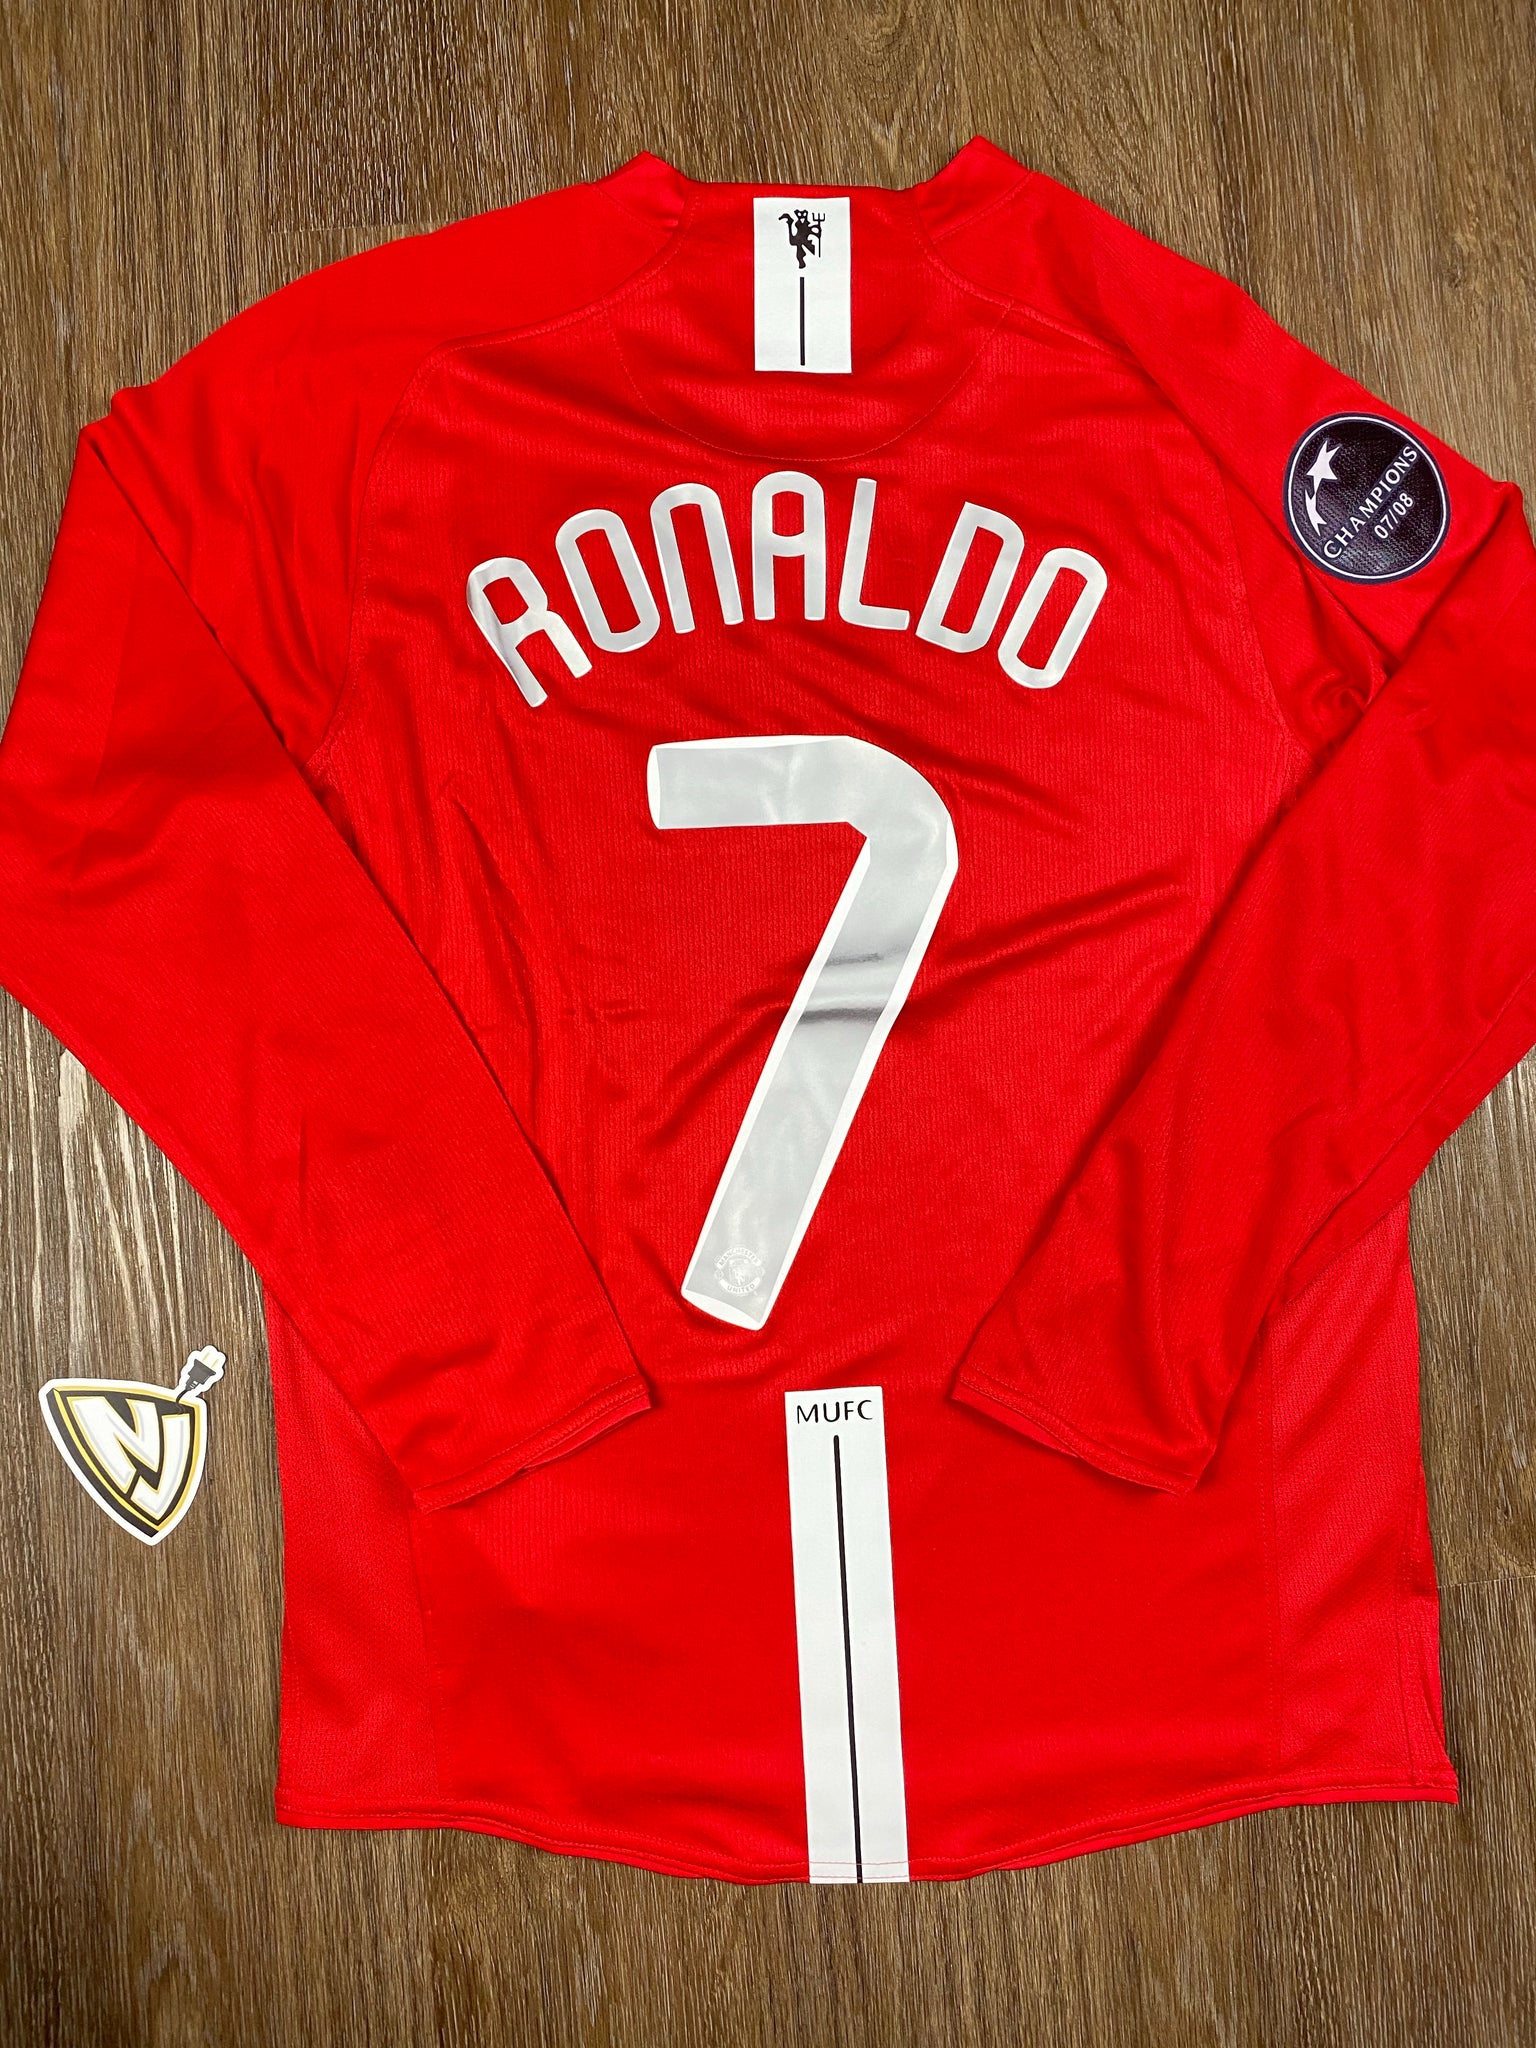 2008 Manchester United Cristiano Ronaldo Home Jersey